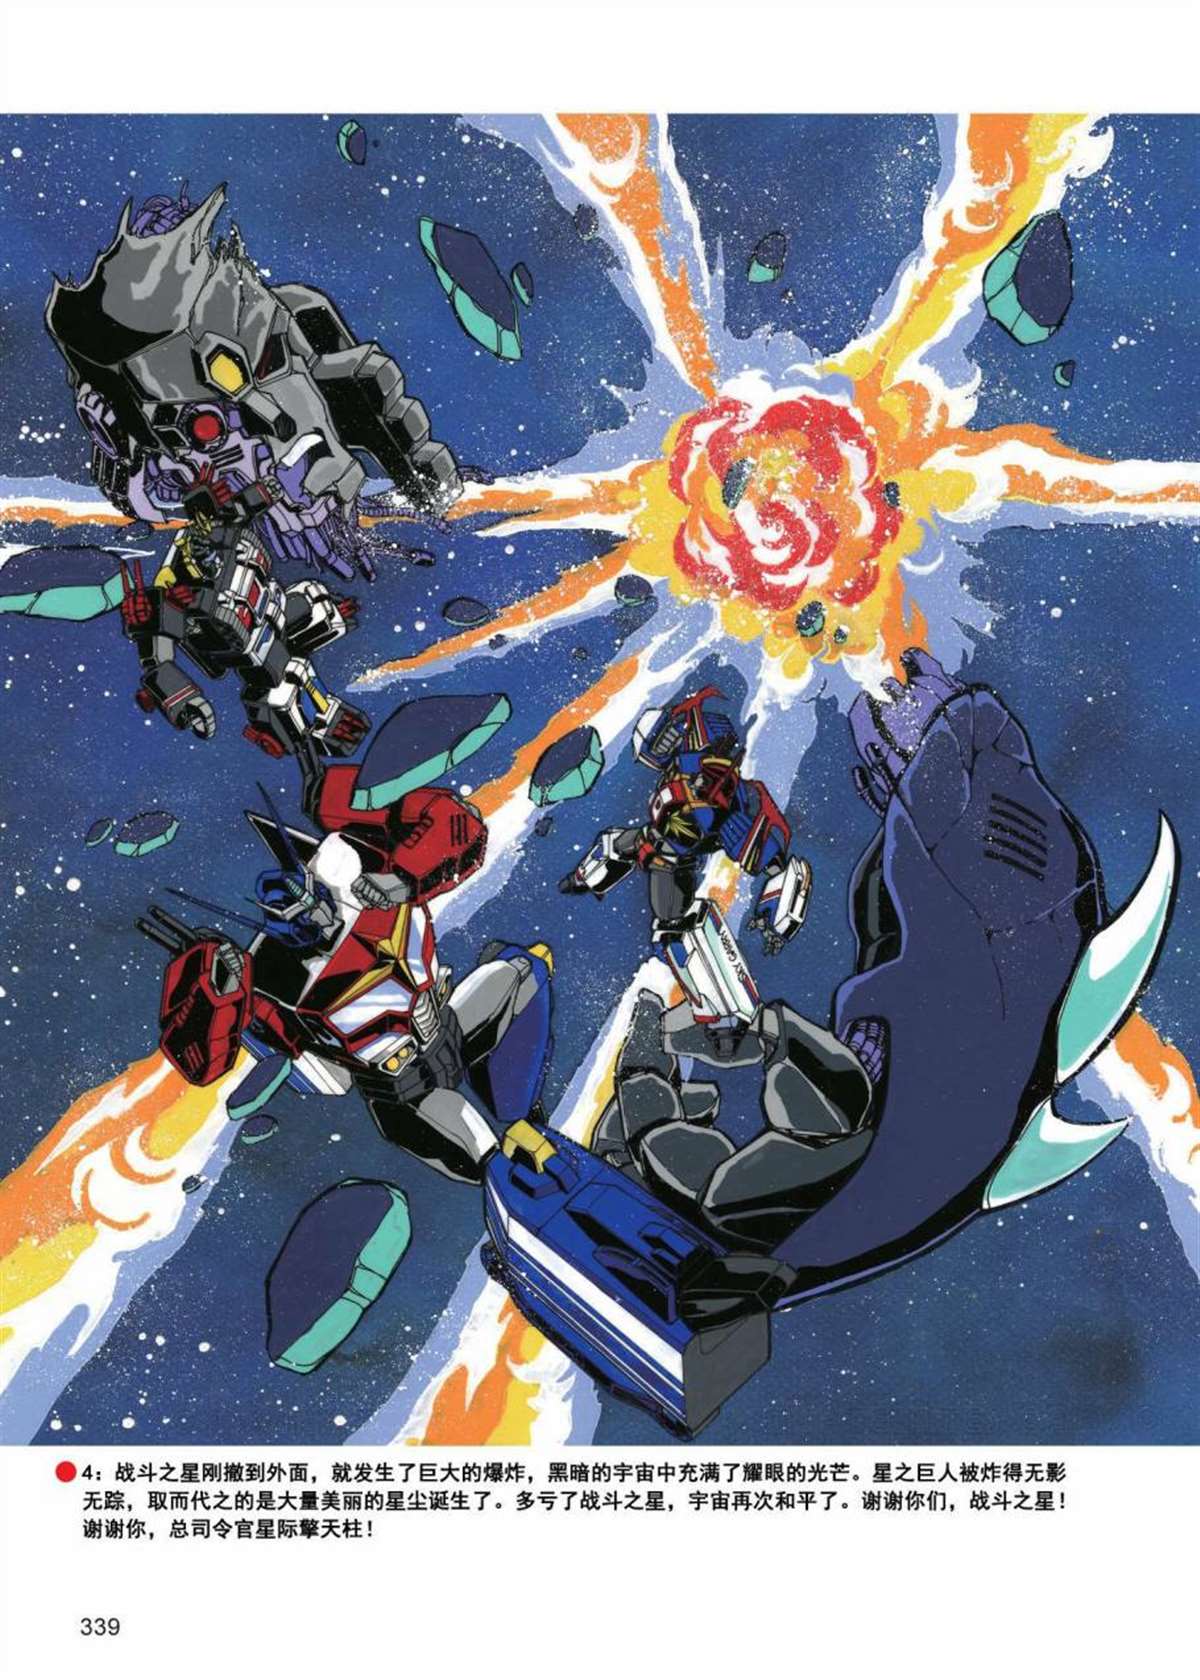 變形金剛日版G1雜誌插畫 - 《戰鬥吧！超機械生命體變形金剛：戰鬥之星》 - 2